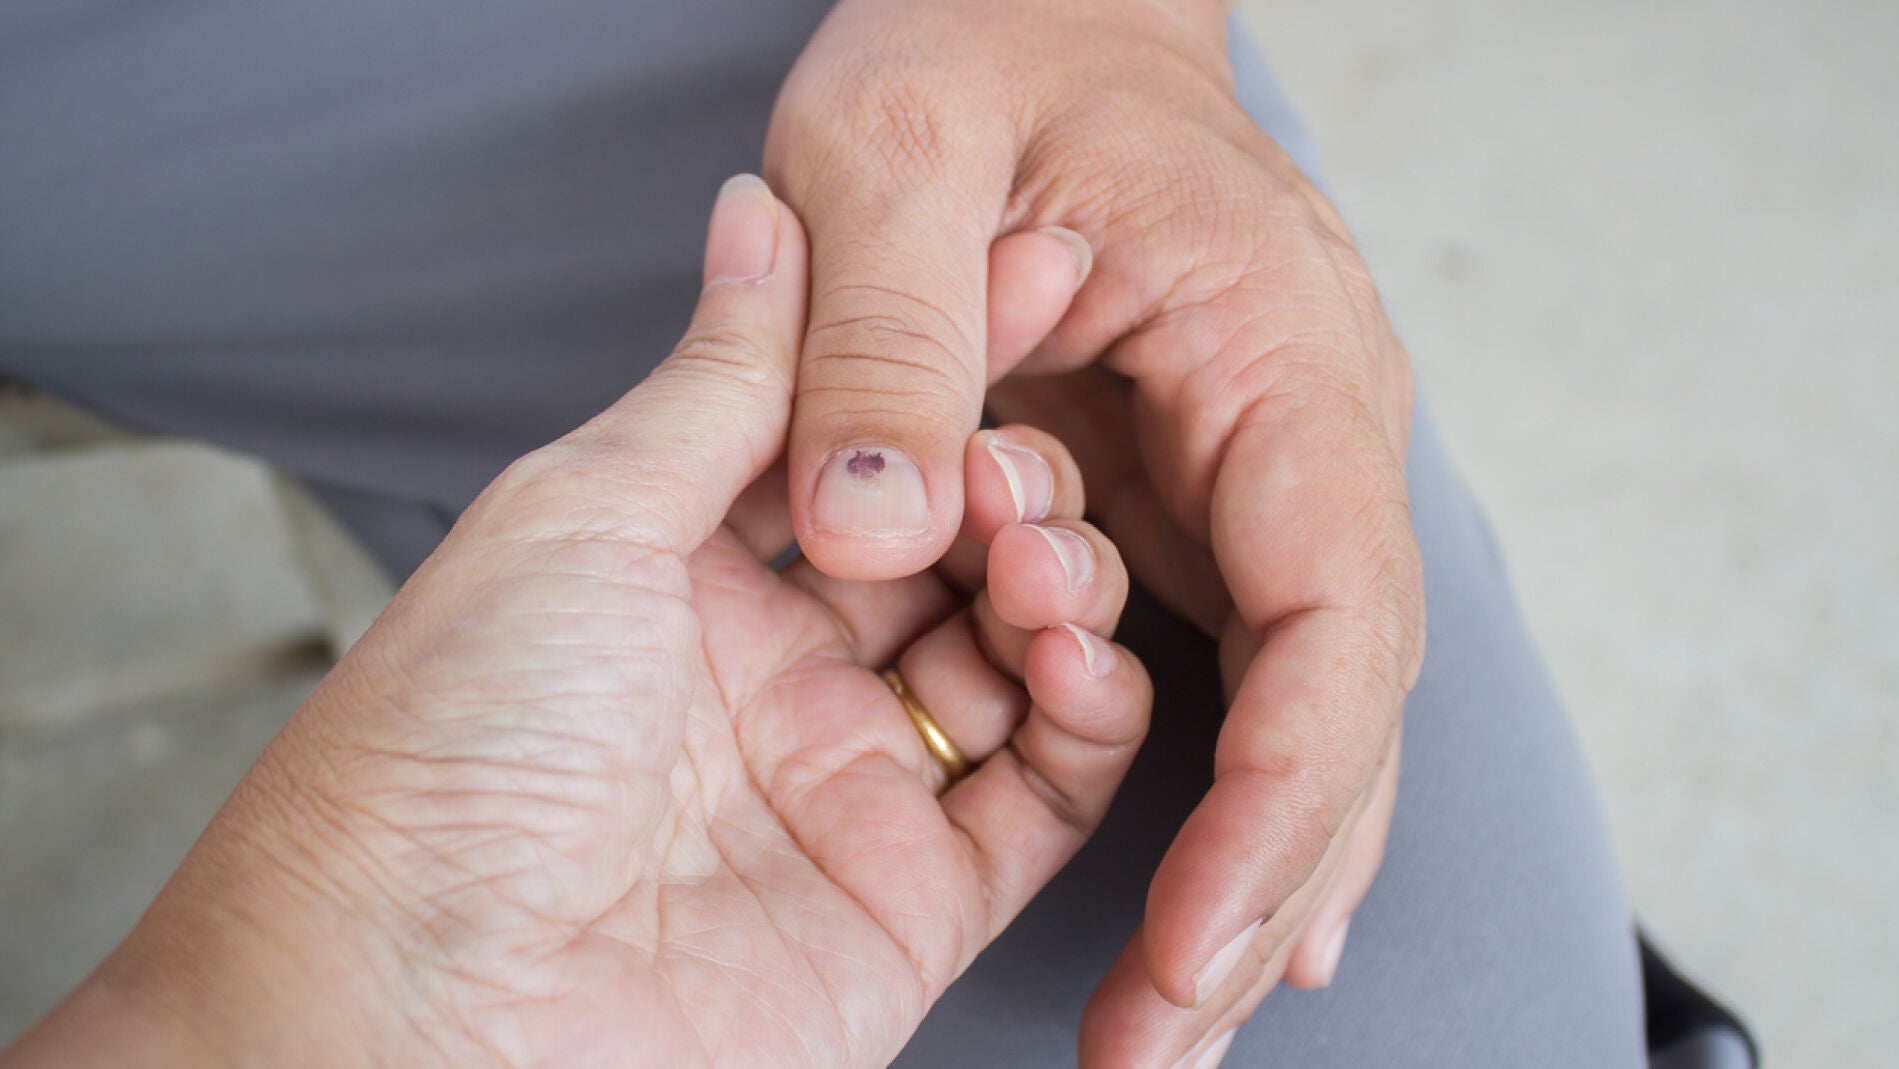 Las uñas amarillentas pueden ser señal de daño en el hígado y otros  problemas de salud  Estilo de Vida Bienestar  Univision